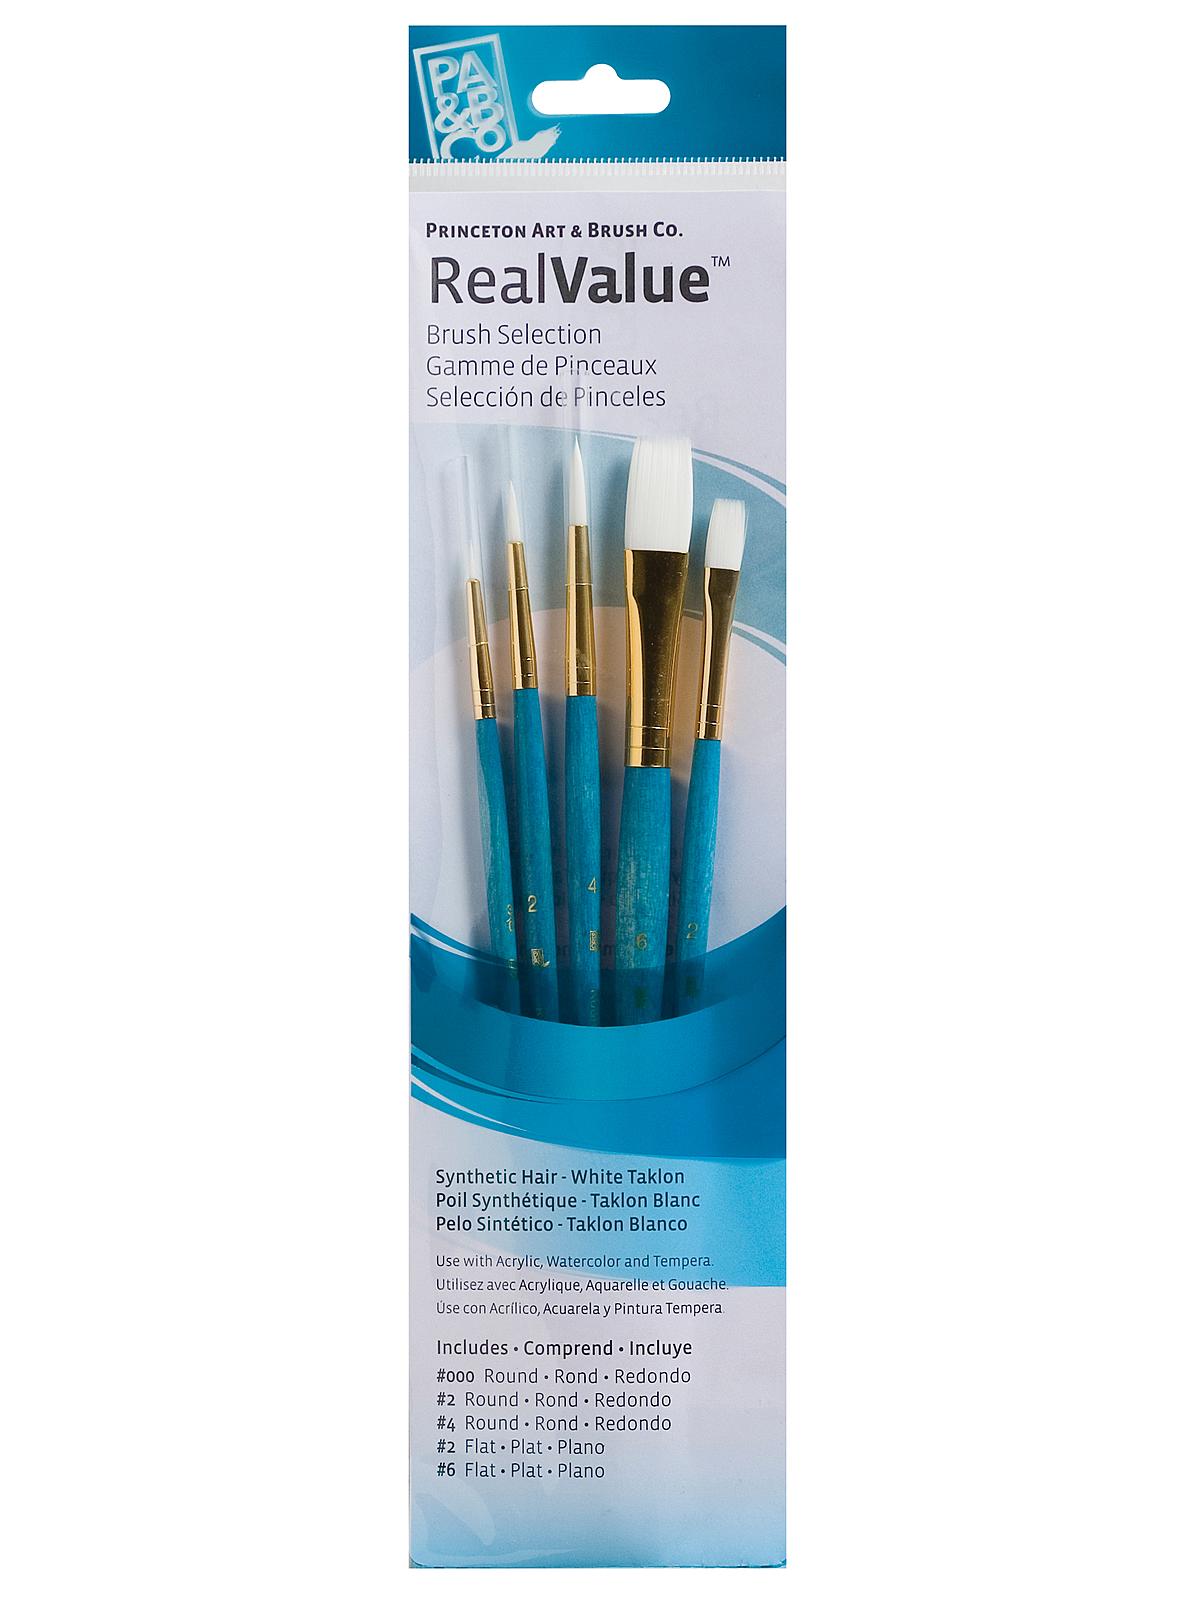 Real Value Series 9000 Light Blue Short Handled Brush Sets 9174 Set Of 5